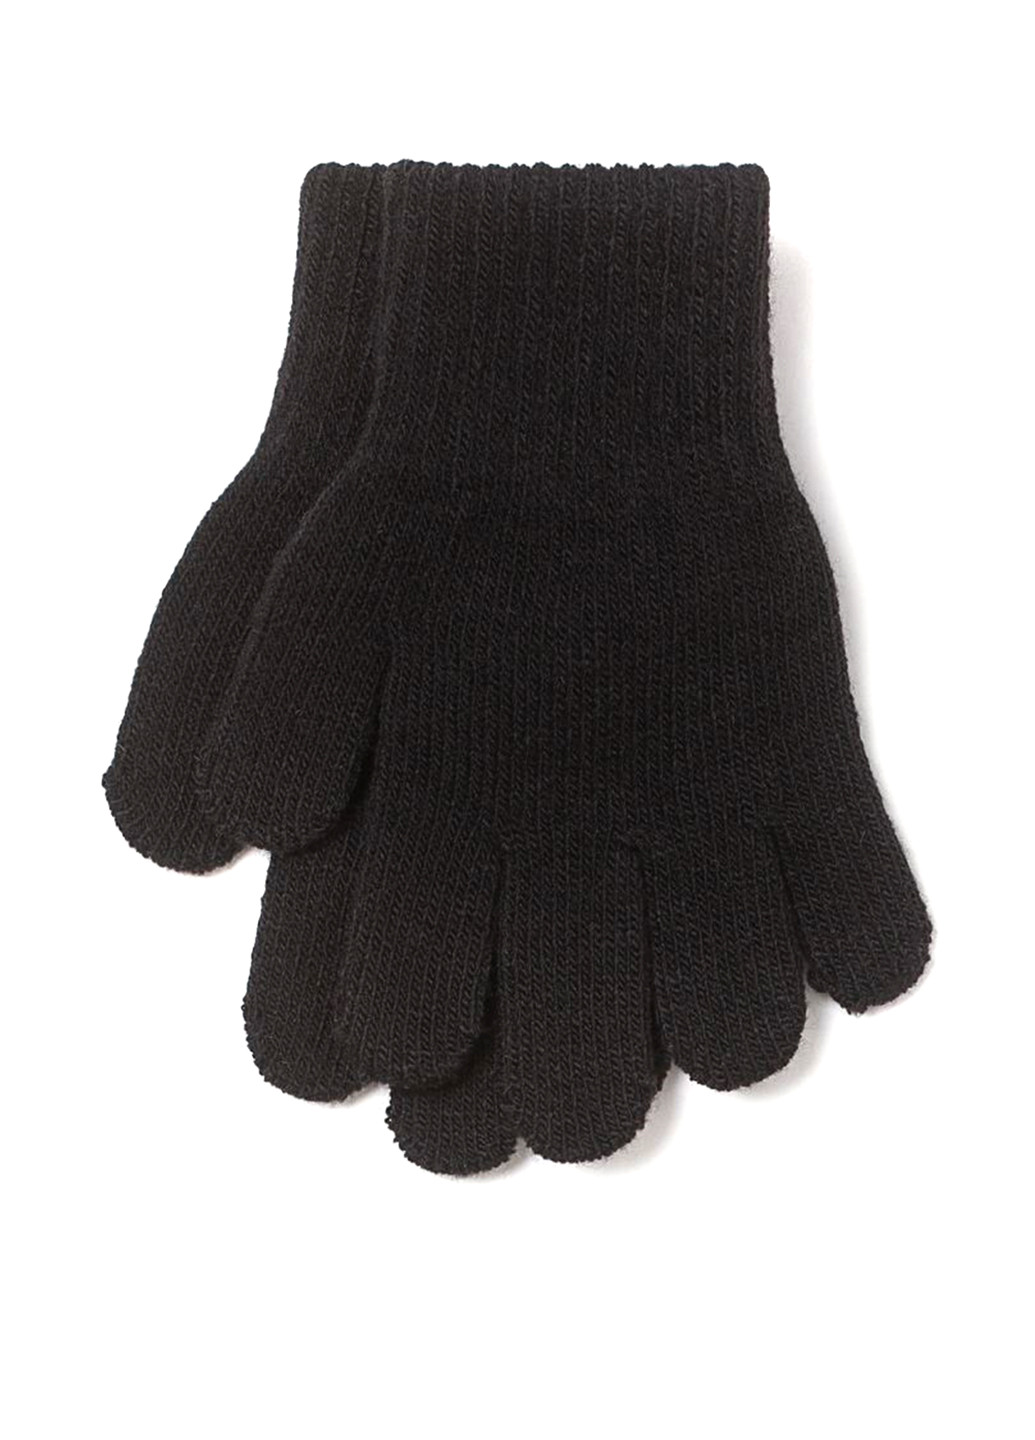 Перчатки H&M однотонные чёрные кэжуалы акрил